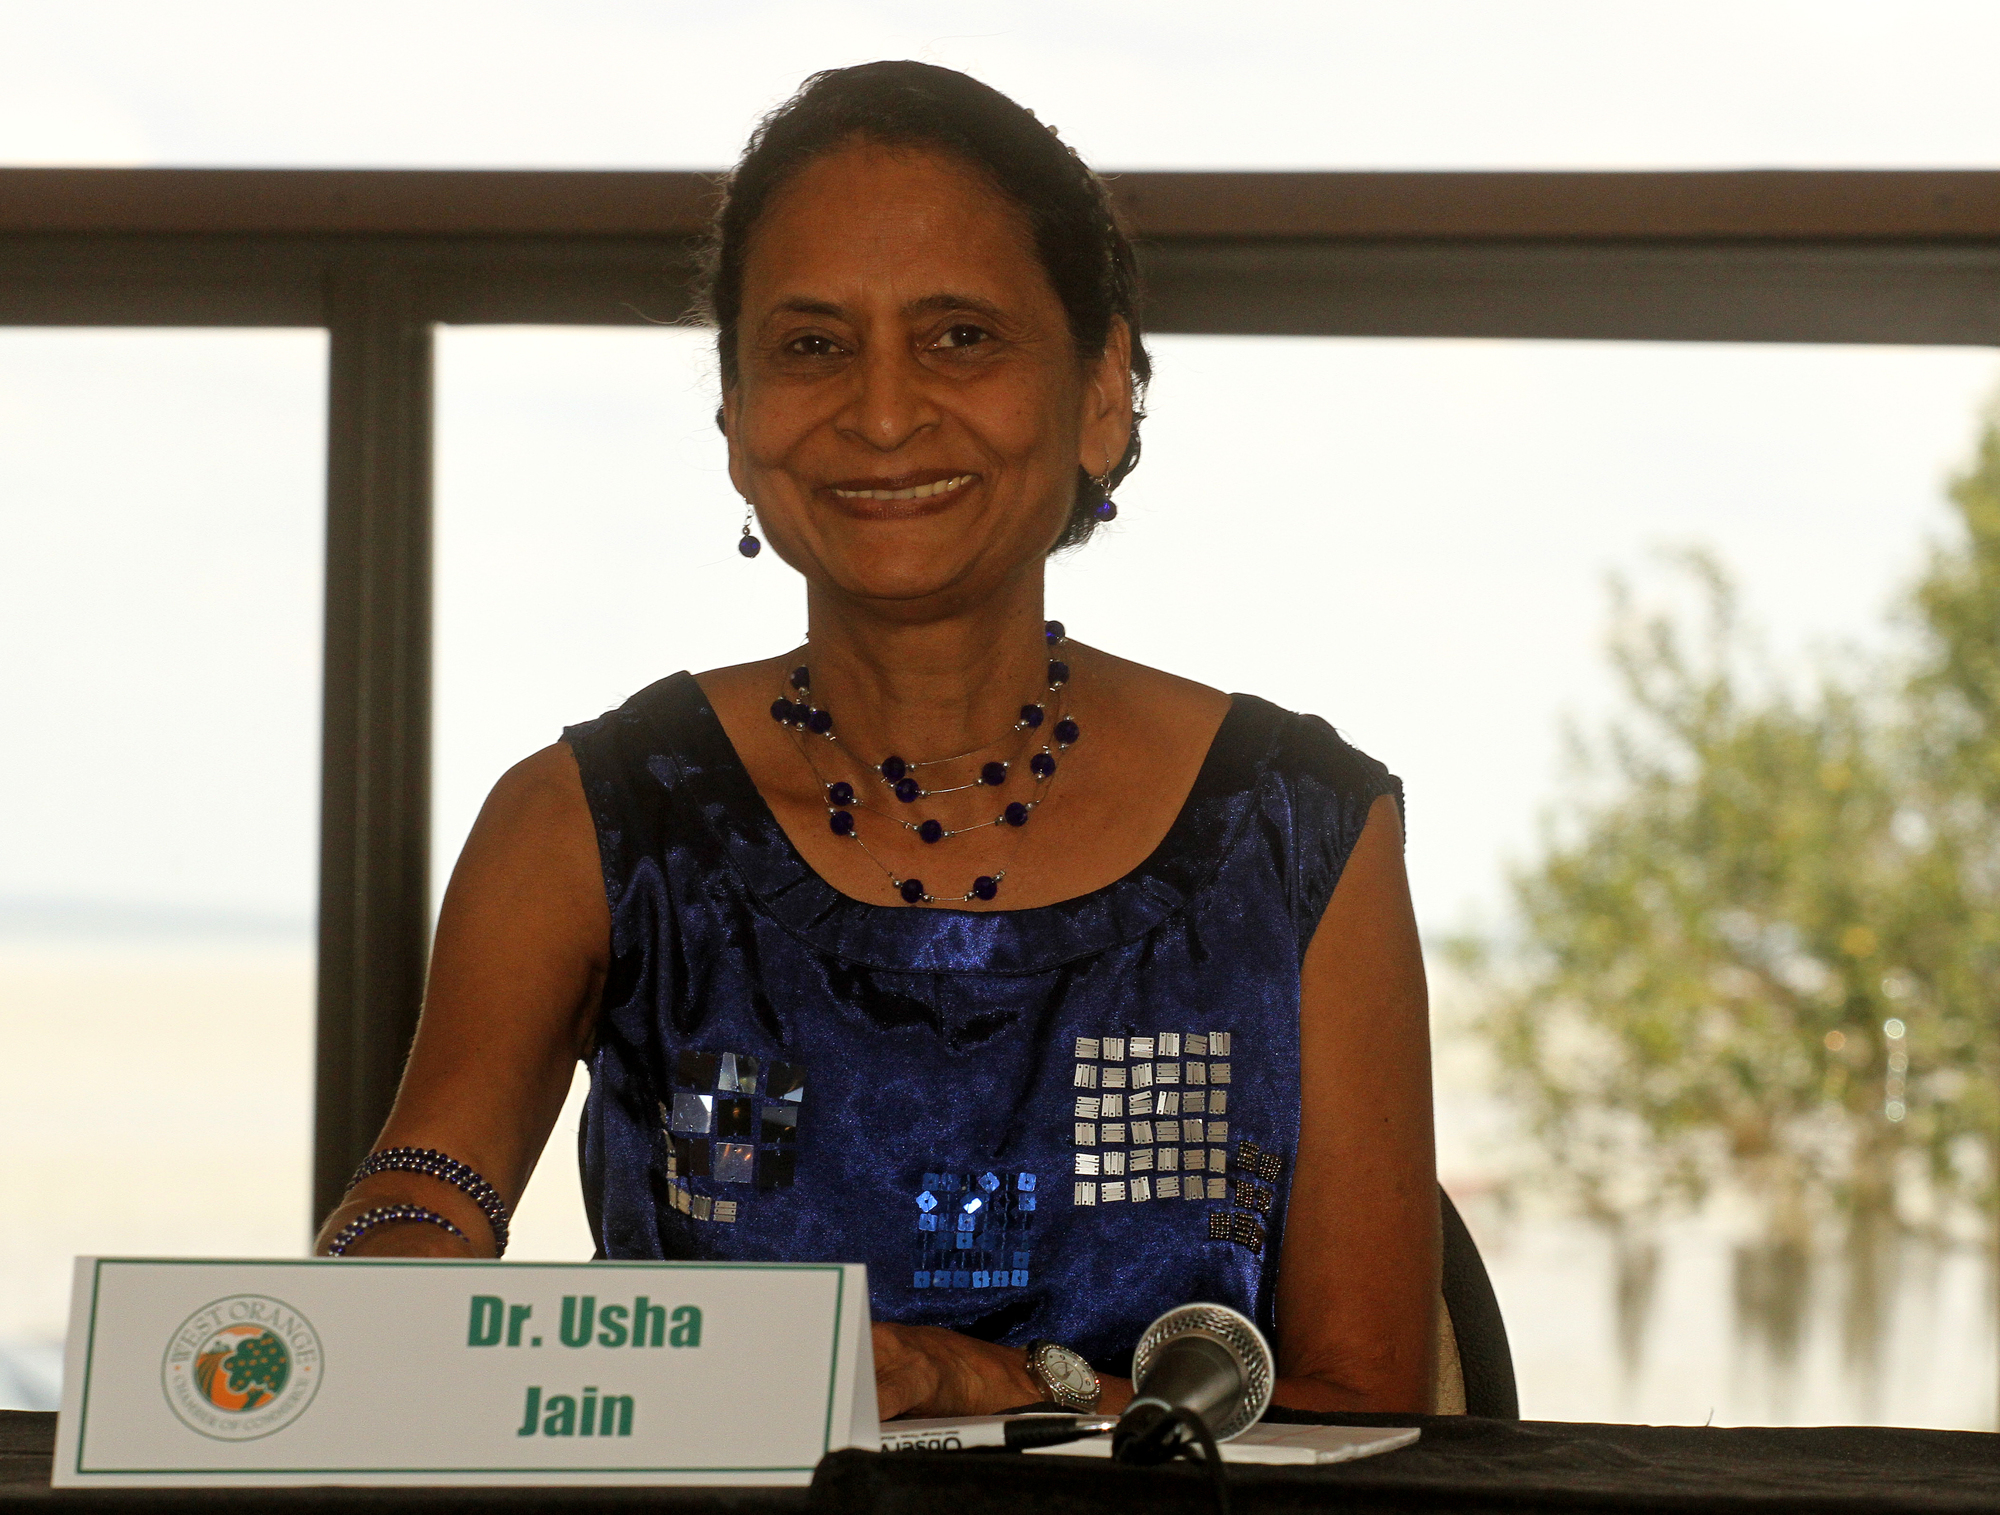 Usha Jain